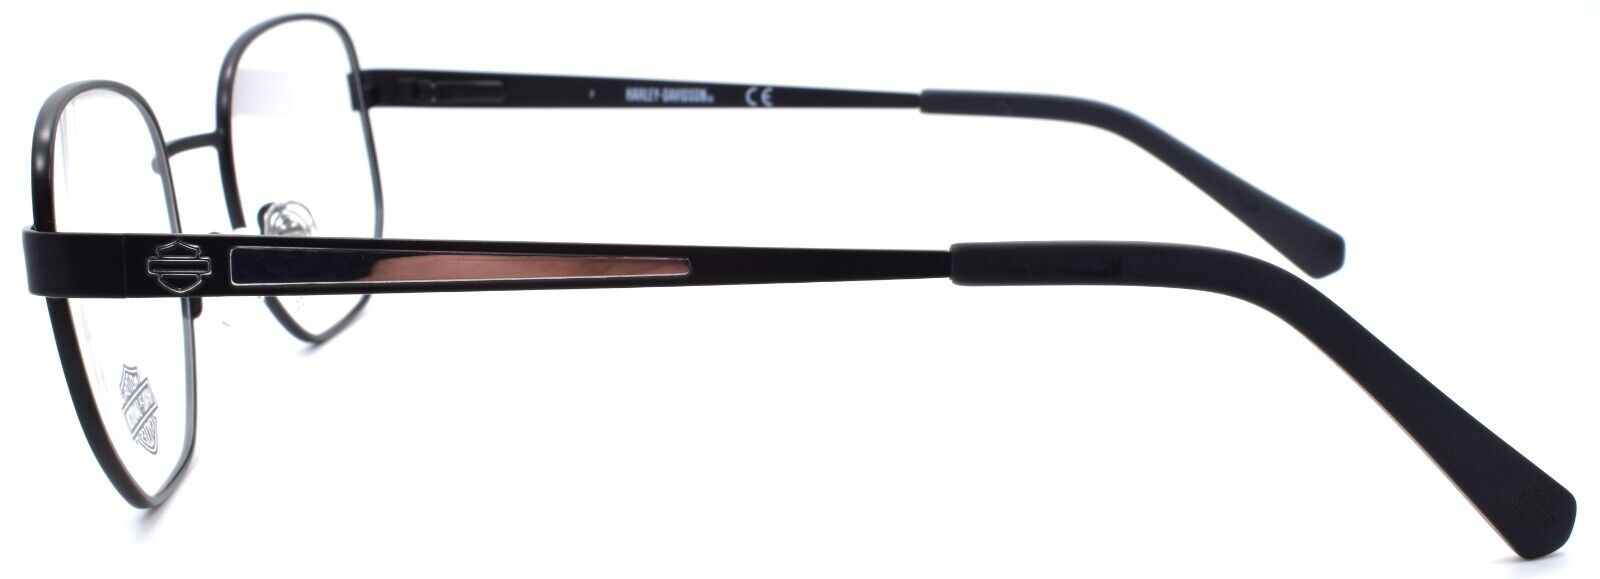 3-Harley Davidson HD0881 002 Men's Eyeglasses Frames 50-21-145 Black-889214259233-IKSpecs